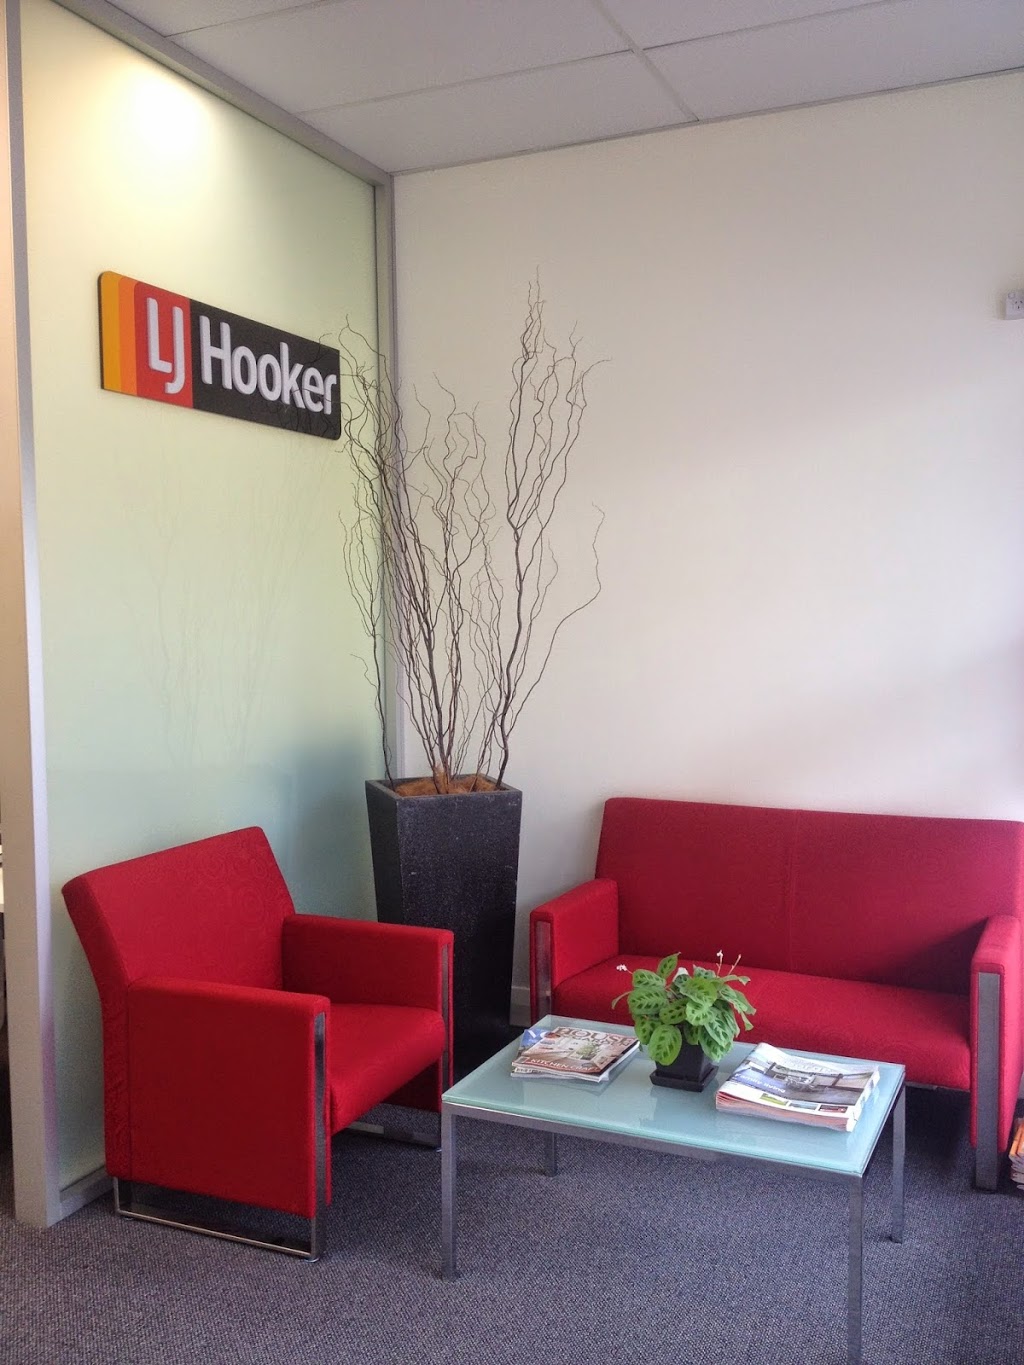 LJ Hooker Mortdale | real estate agency | 11A Morts Rd, Mortdale NSW 2223, Australia | 0295704488 OR +61 2 9570 4488